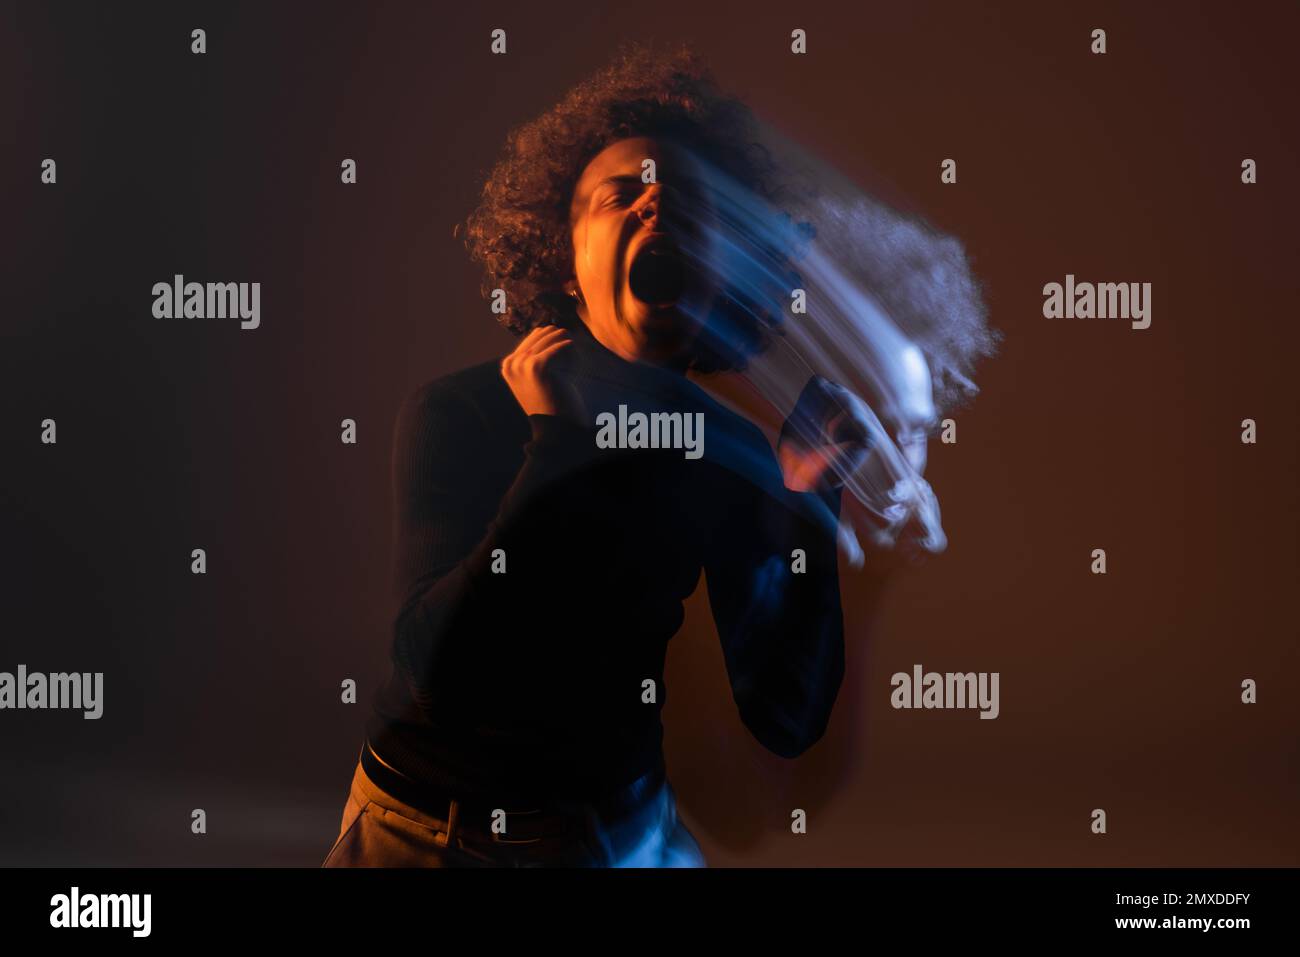 doppia esposizione di afroamericano arrabbiato con disturbo bipolare urlando su sfondo scuro con luce arancione e blu, immagine stock Foto Stock